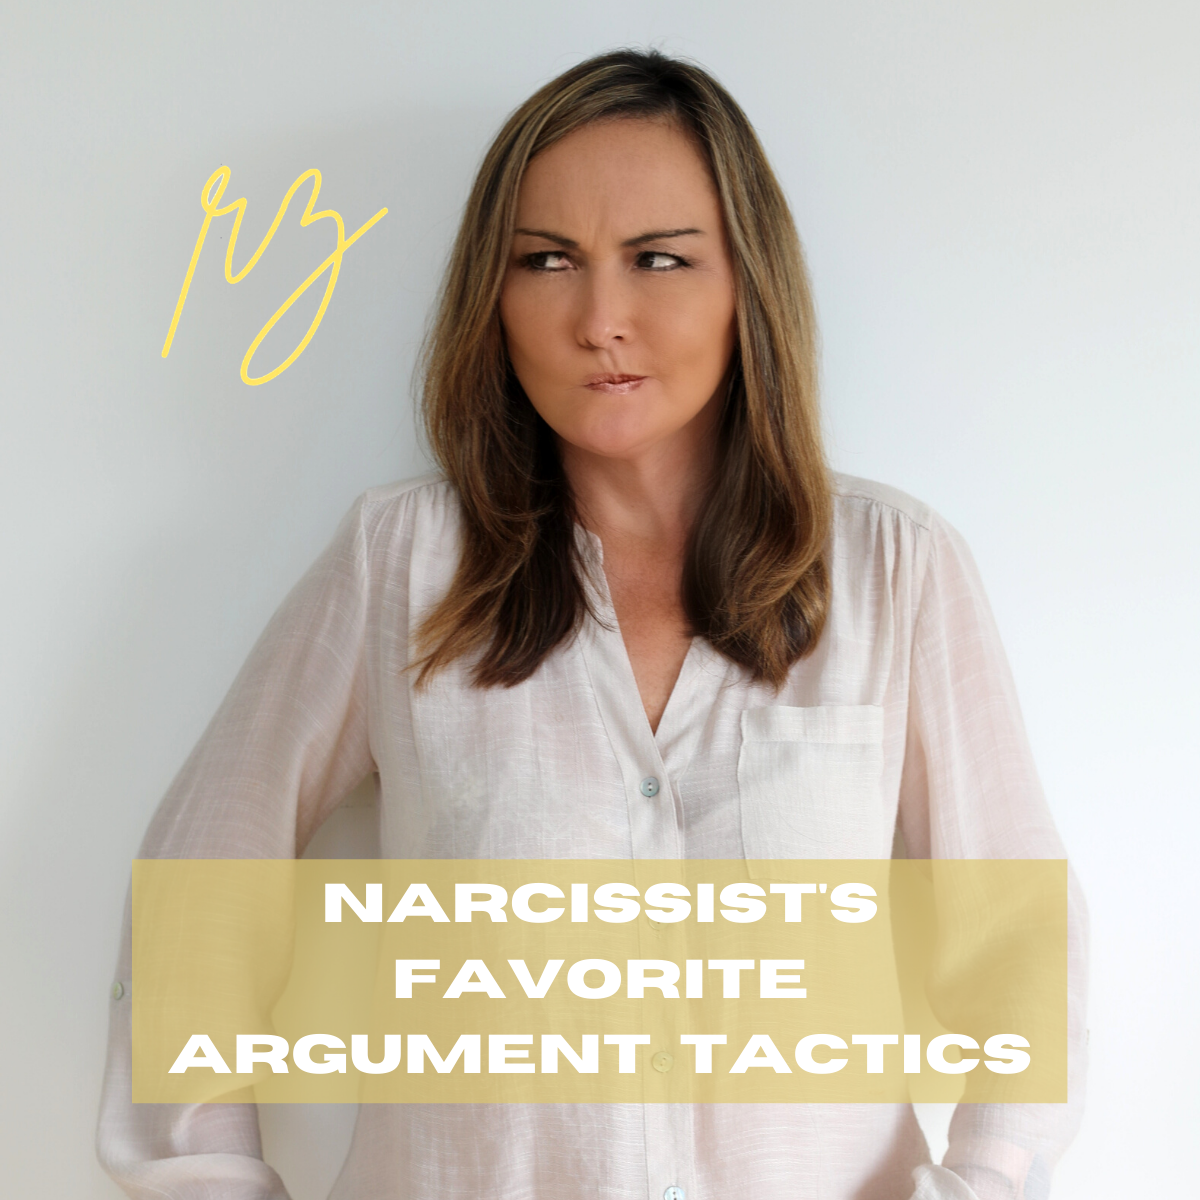 Narcissist's Favorite Argument Tactics